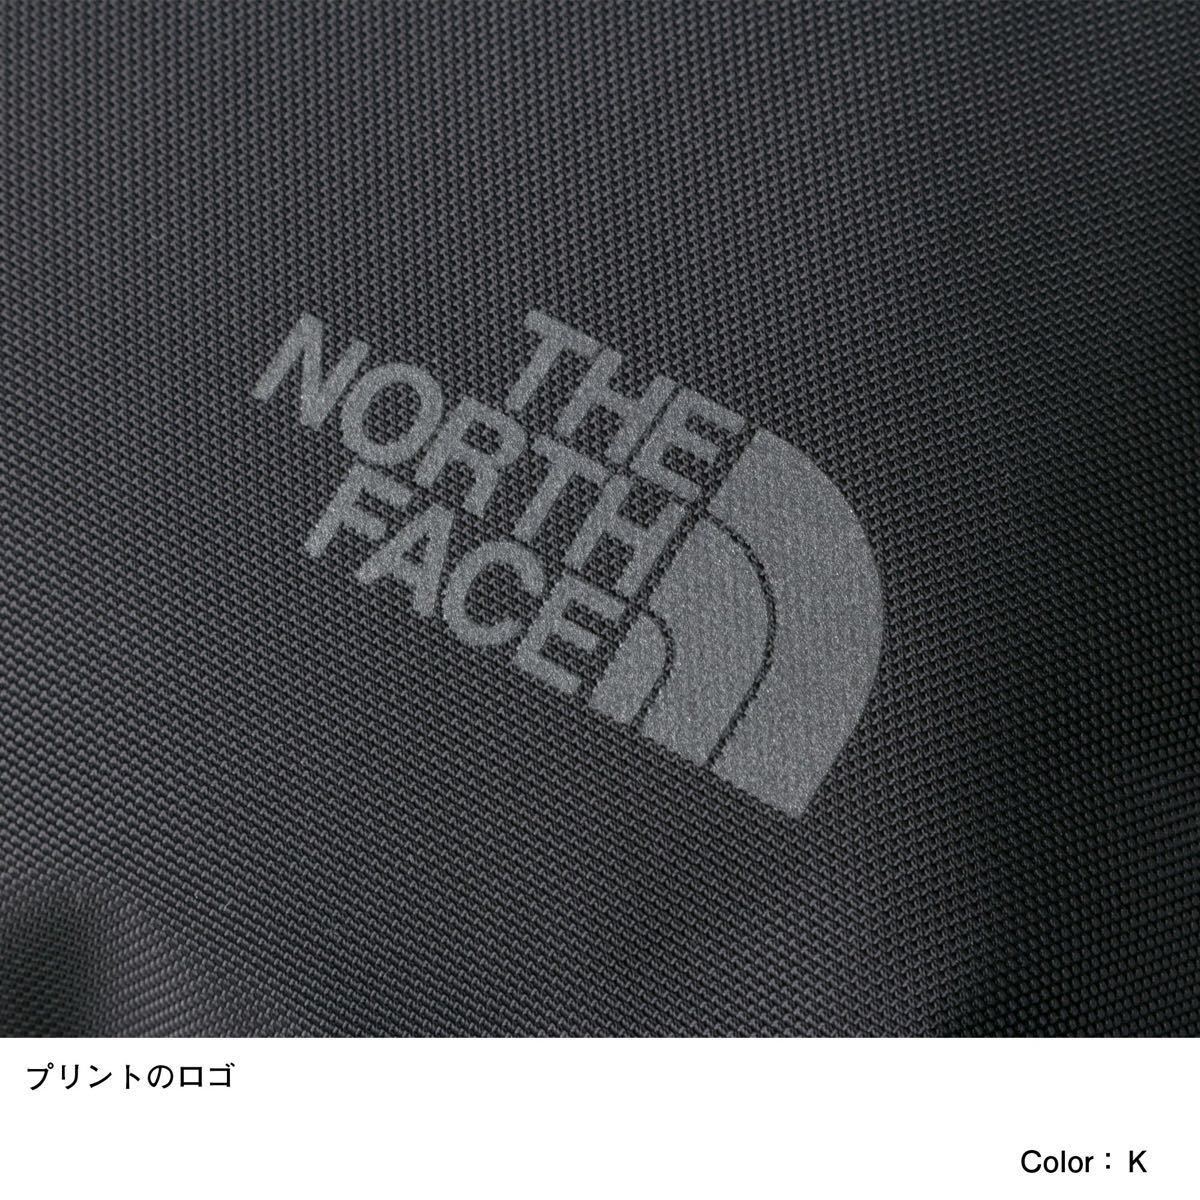 THE NORTH FACE ザノースフェイス シャトルダッフル ブラック(黒) 50L 新品